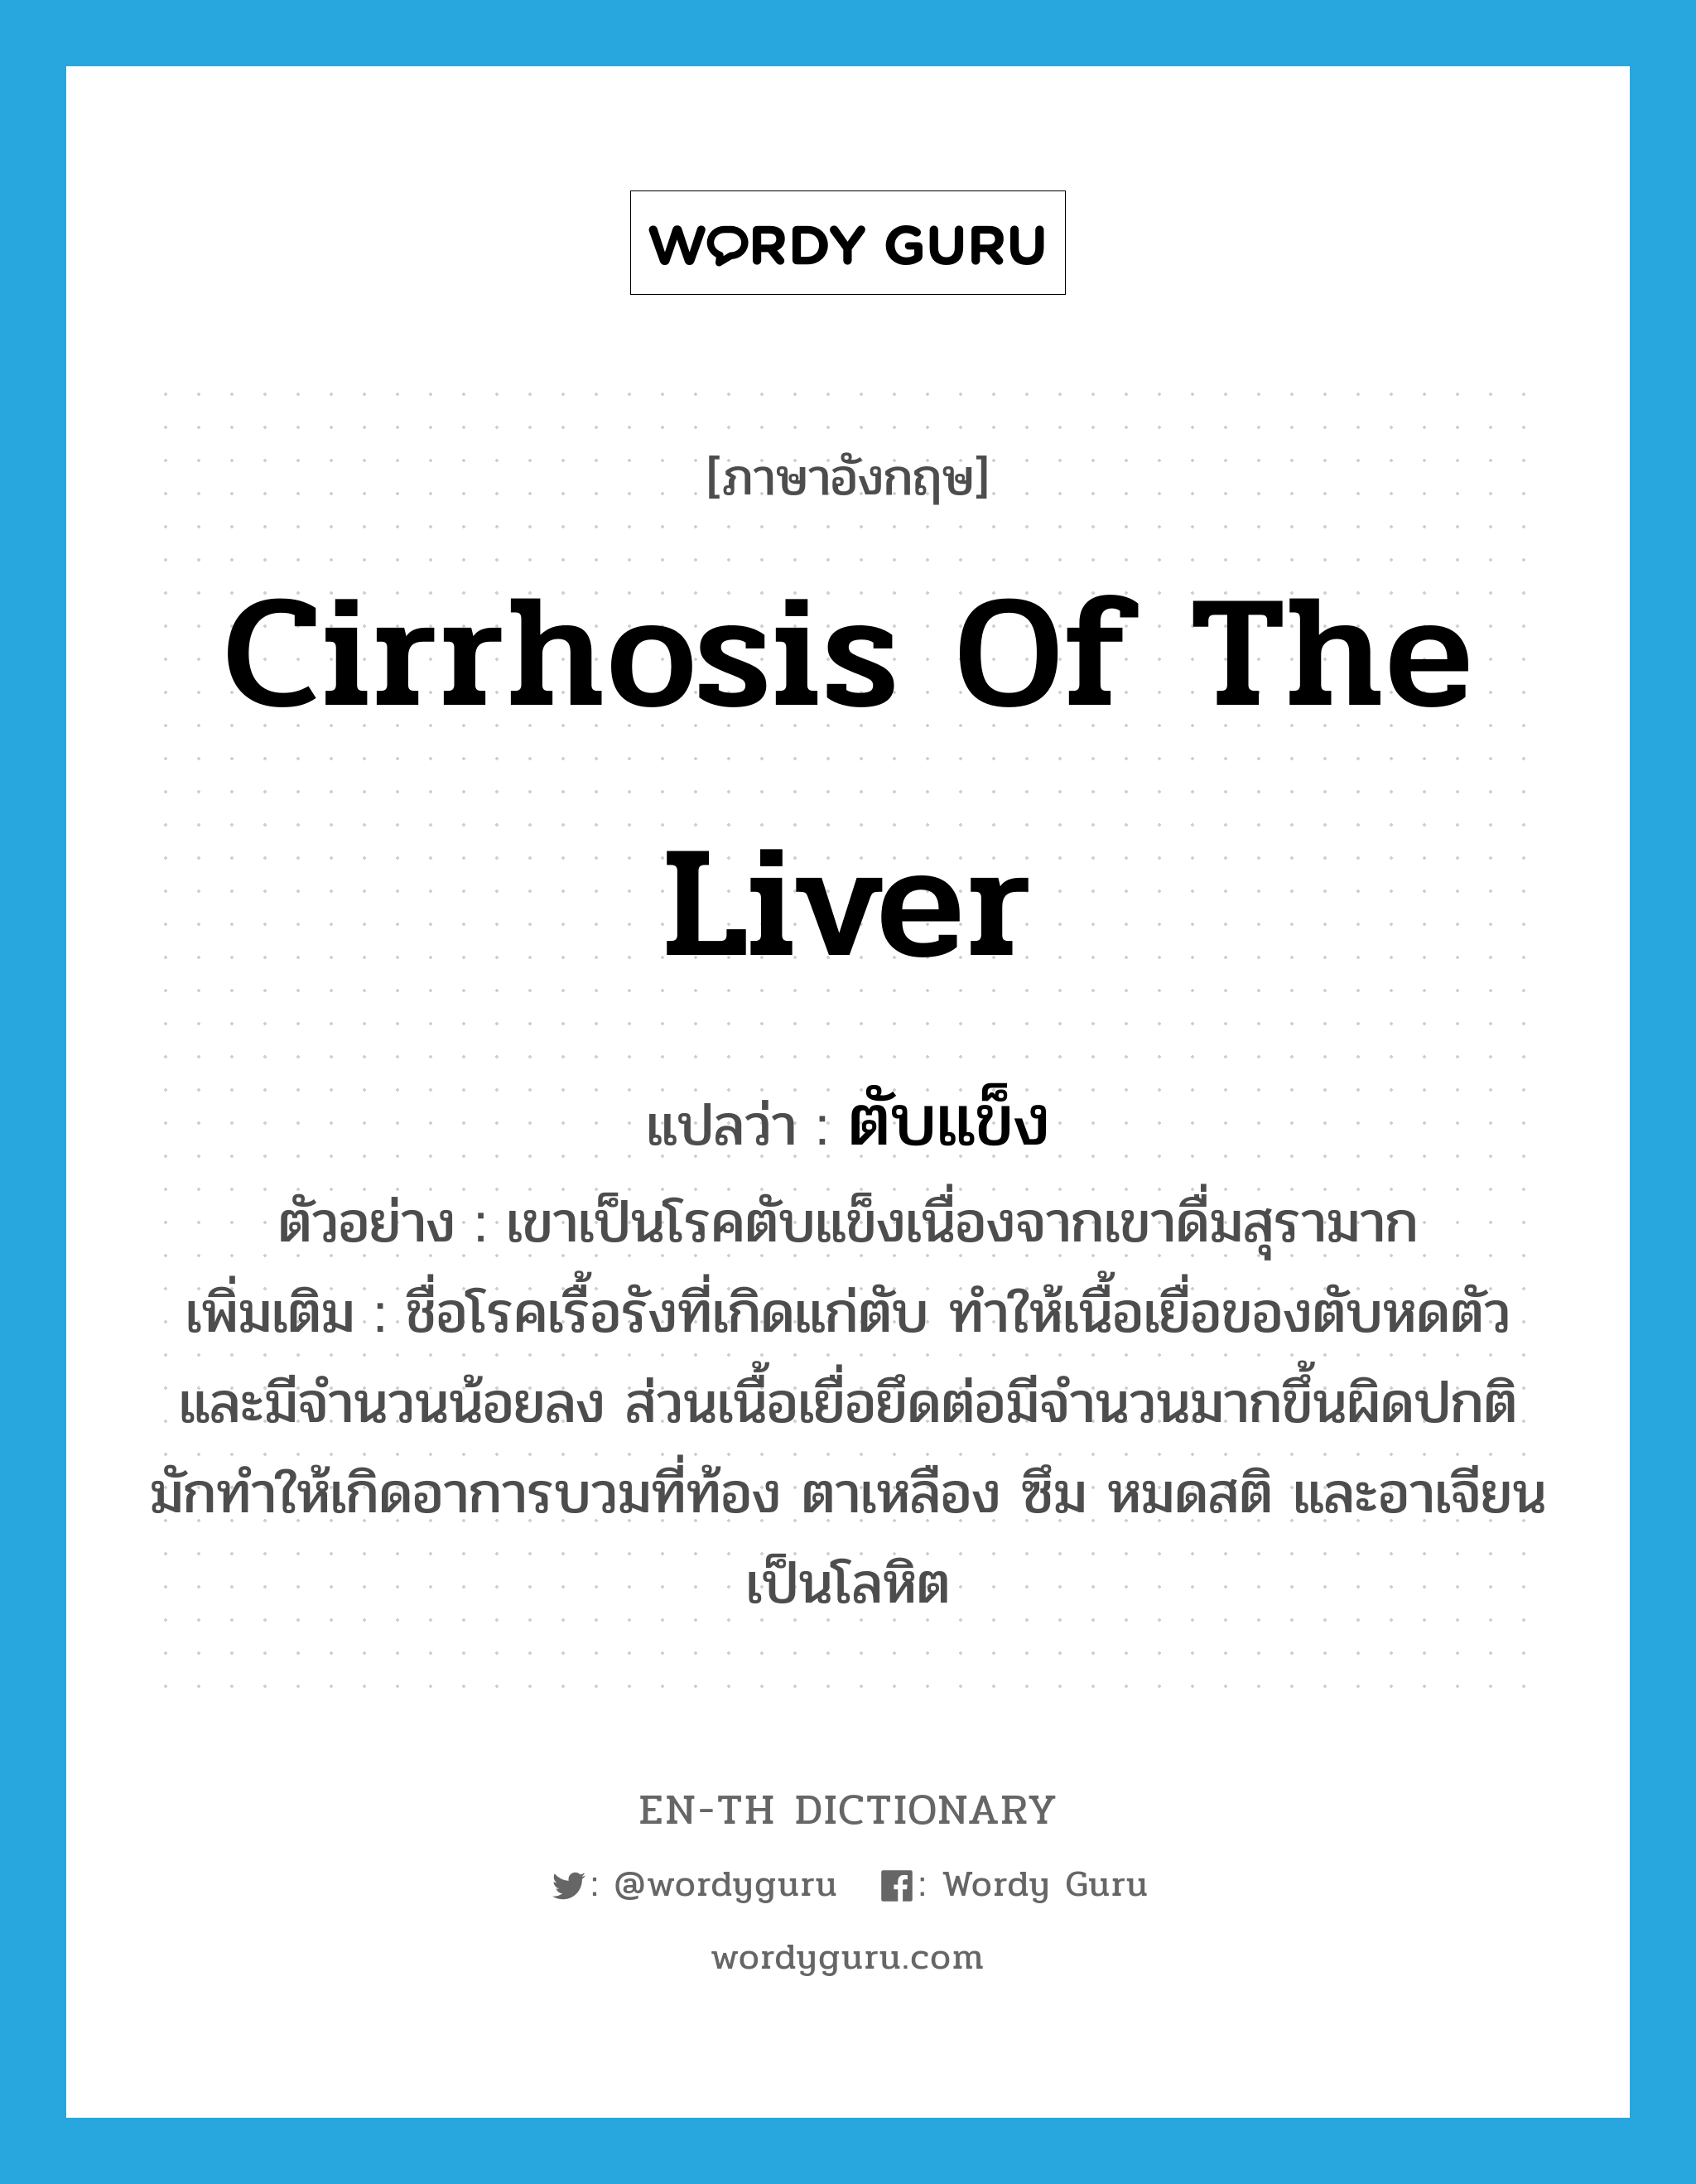 ตับแข็ง ภาษาอังกฤษ?, คำศัพท์ภาษาอังกฤษ ตับแข็ง แปลว่า cirrhosis of the liver ประเภท N ตัวอย่าง เขาเป็นโรคตับแข็งเนื่องจากเขาดื่มสุรามาก เพิ่มเติม ชื่อโรคเรื้อรังที่เกิดแก่ตับ ทำให้เนื้อเยื่อของตับหดตัวและมีจำนวนน้อยลง ส่วนเนื้อเยื่อยึดต่อมีจำนวนมากขึ้นผิดปกติ มักทำให้เกิดอาการบวมที่ท้อง ตาเหลือง ซึม หมดสติ และอาเจียนเป็นโลหิต หมวด N